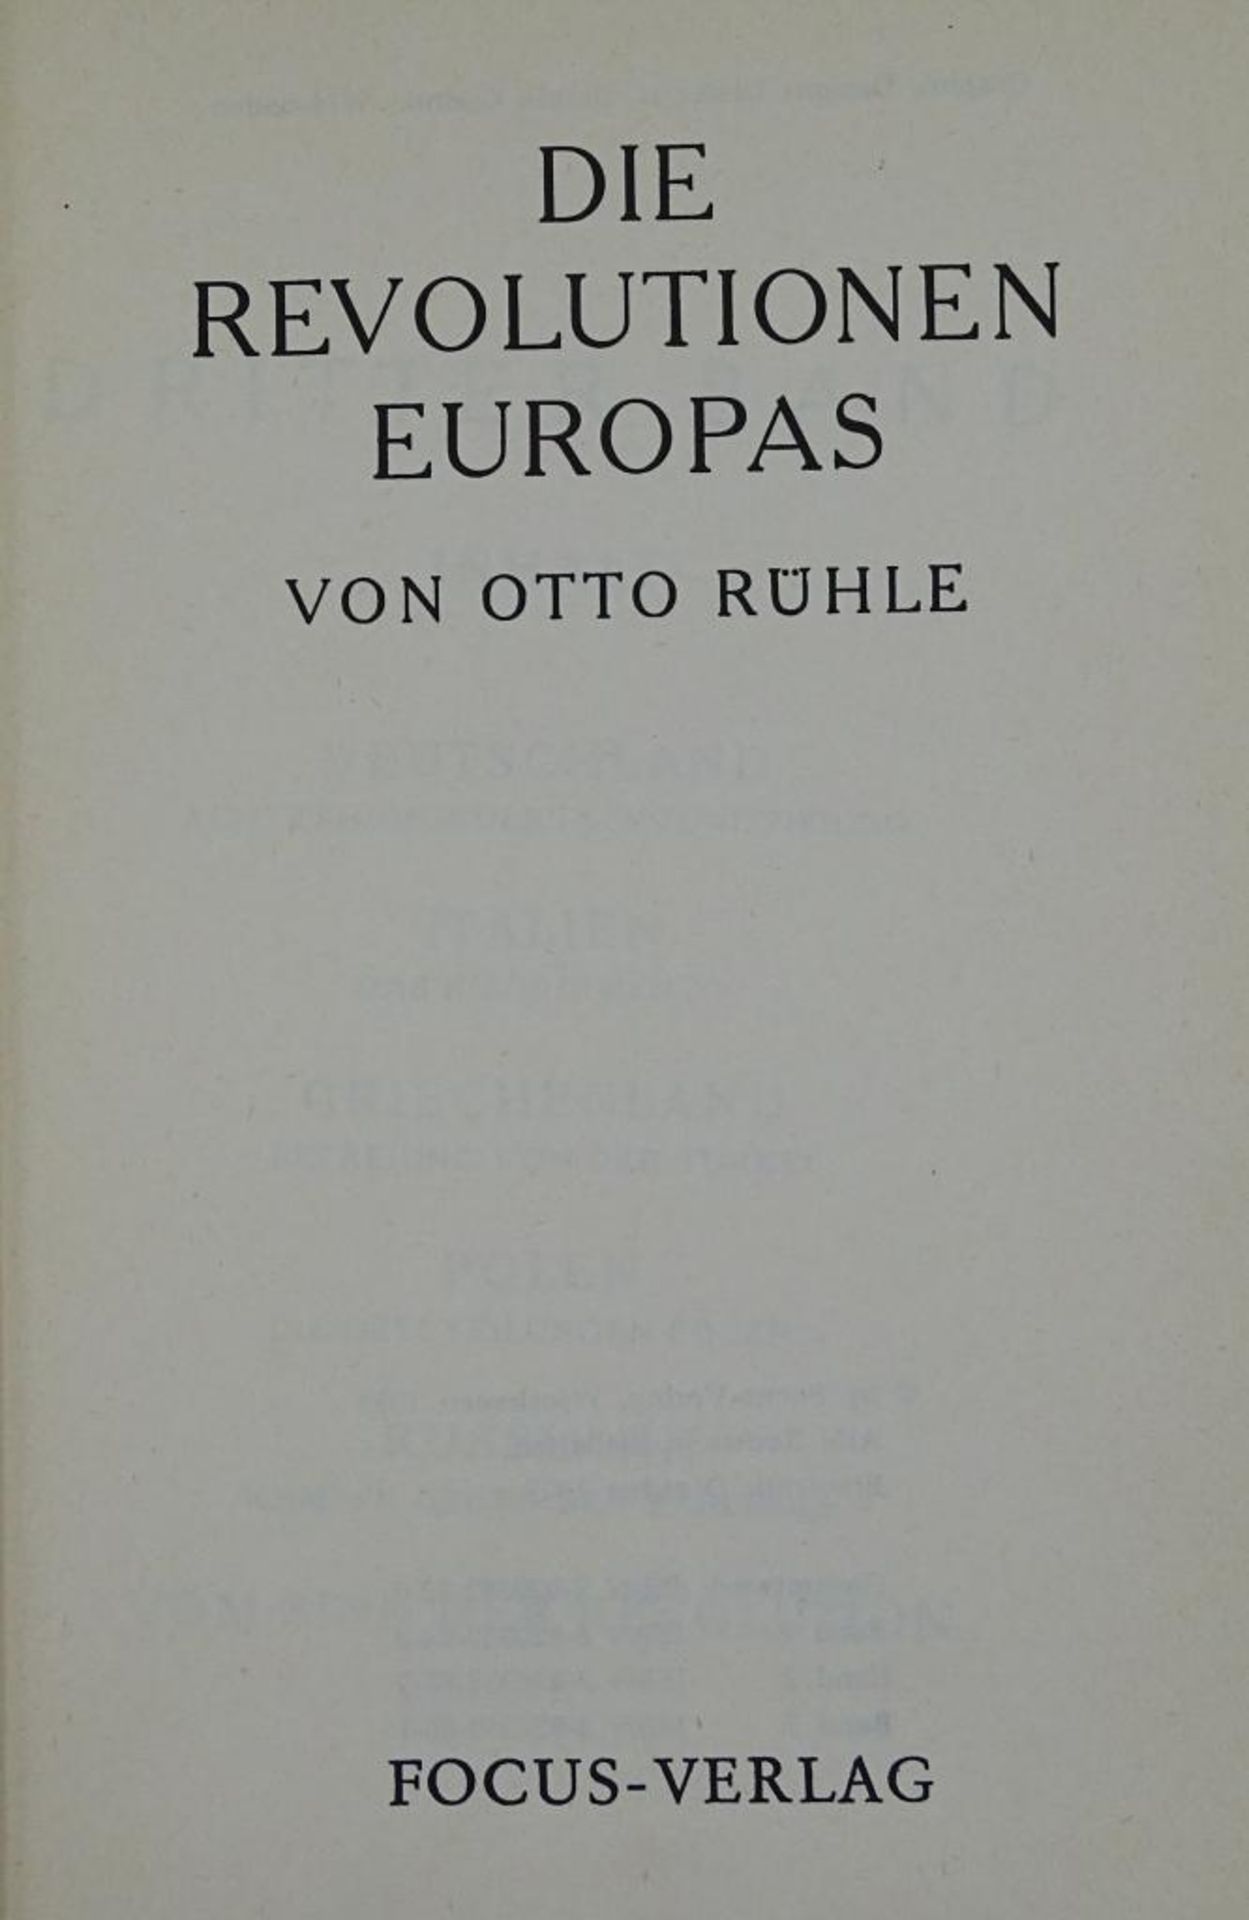 Die Revolutionen Europas von Otto Rühle,Focus Verlag, Wiesbaden 1973,Band I-II - Bild 2 aus 10